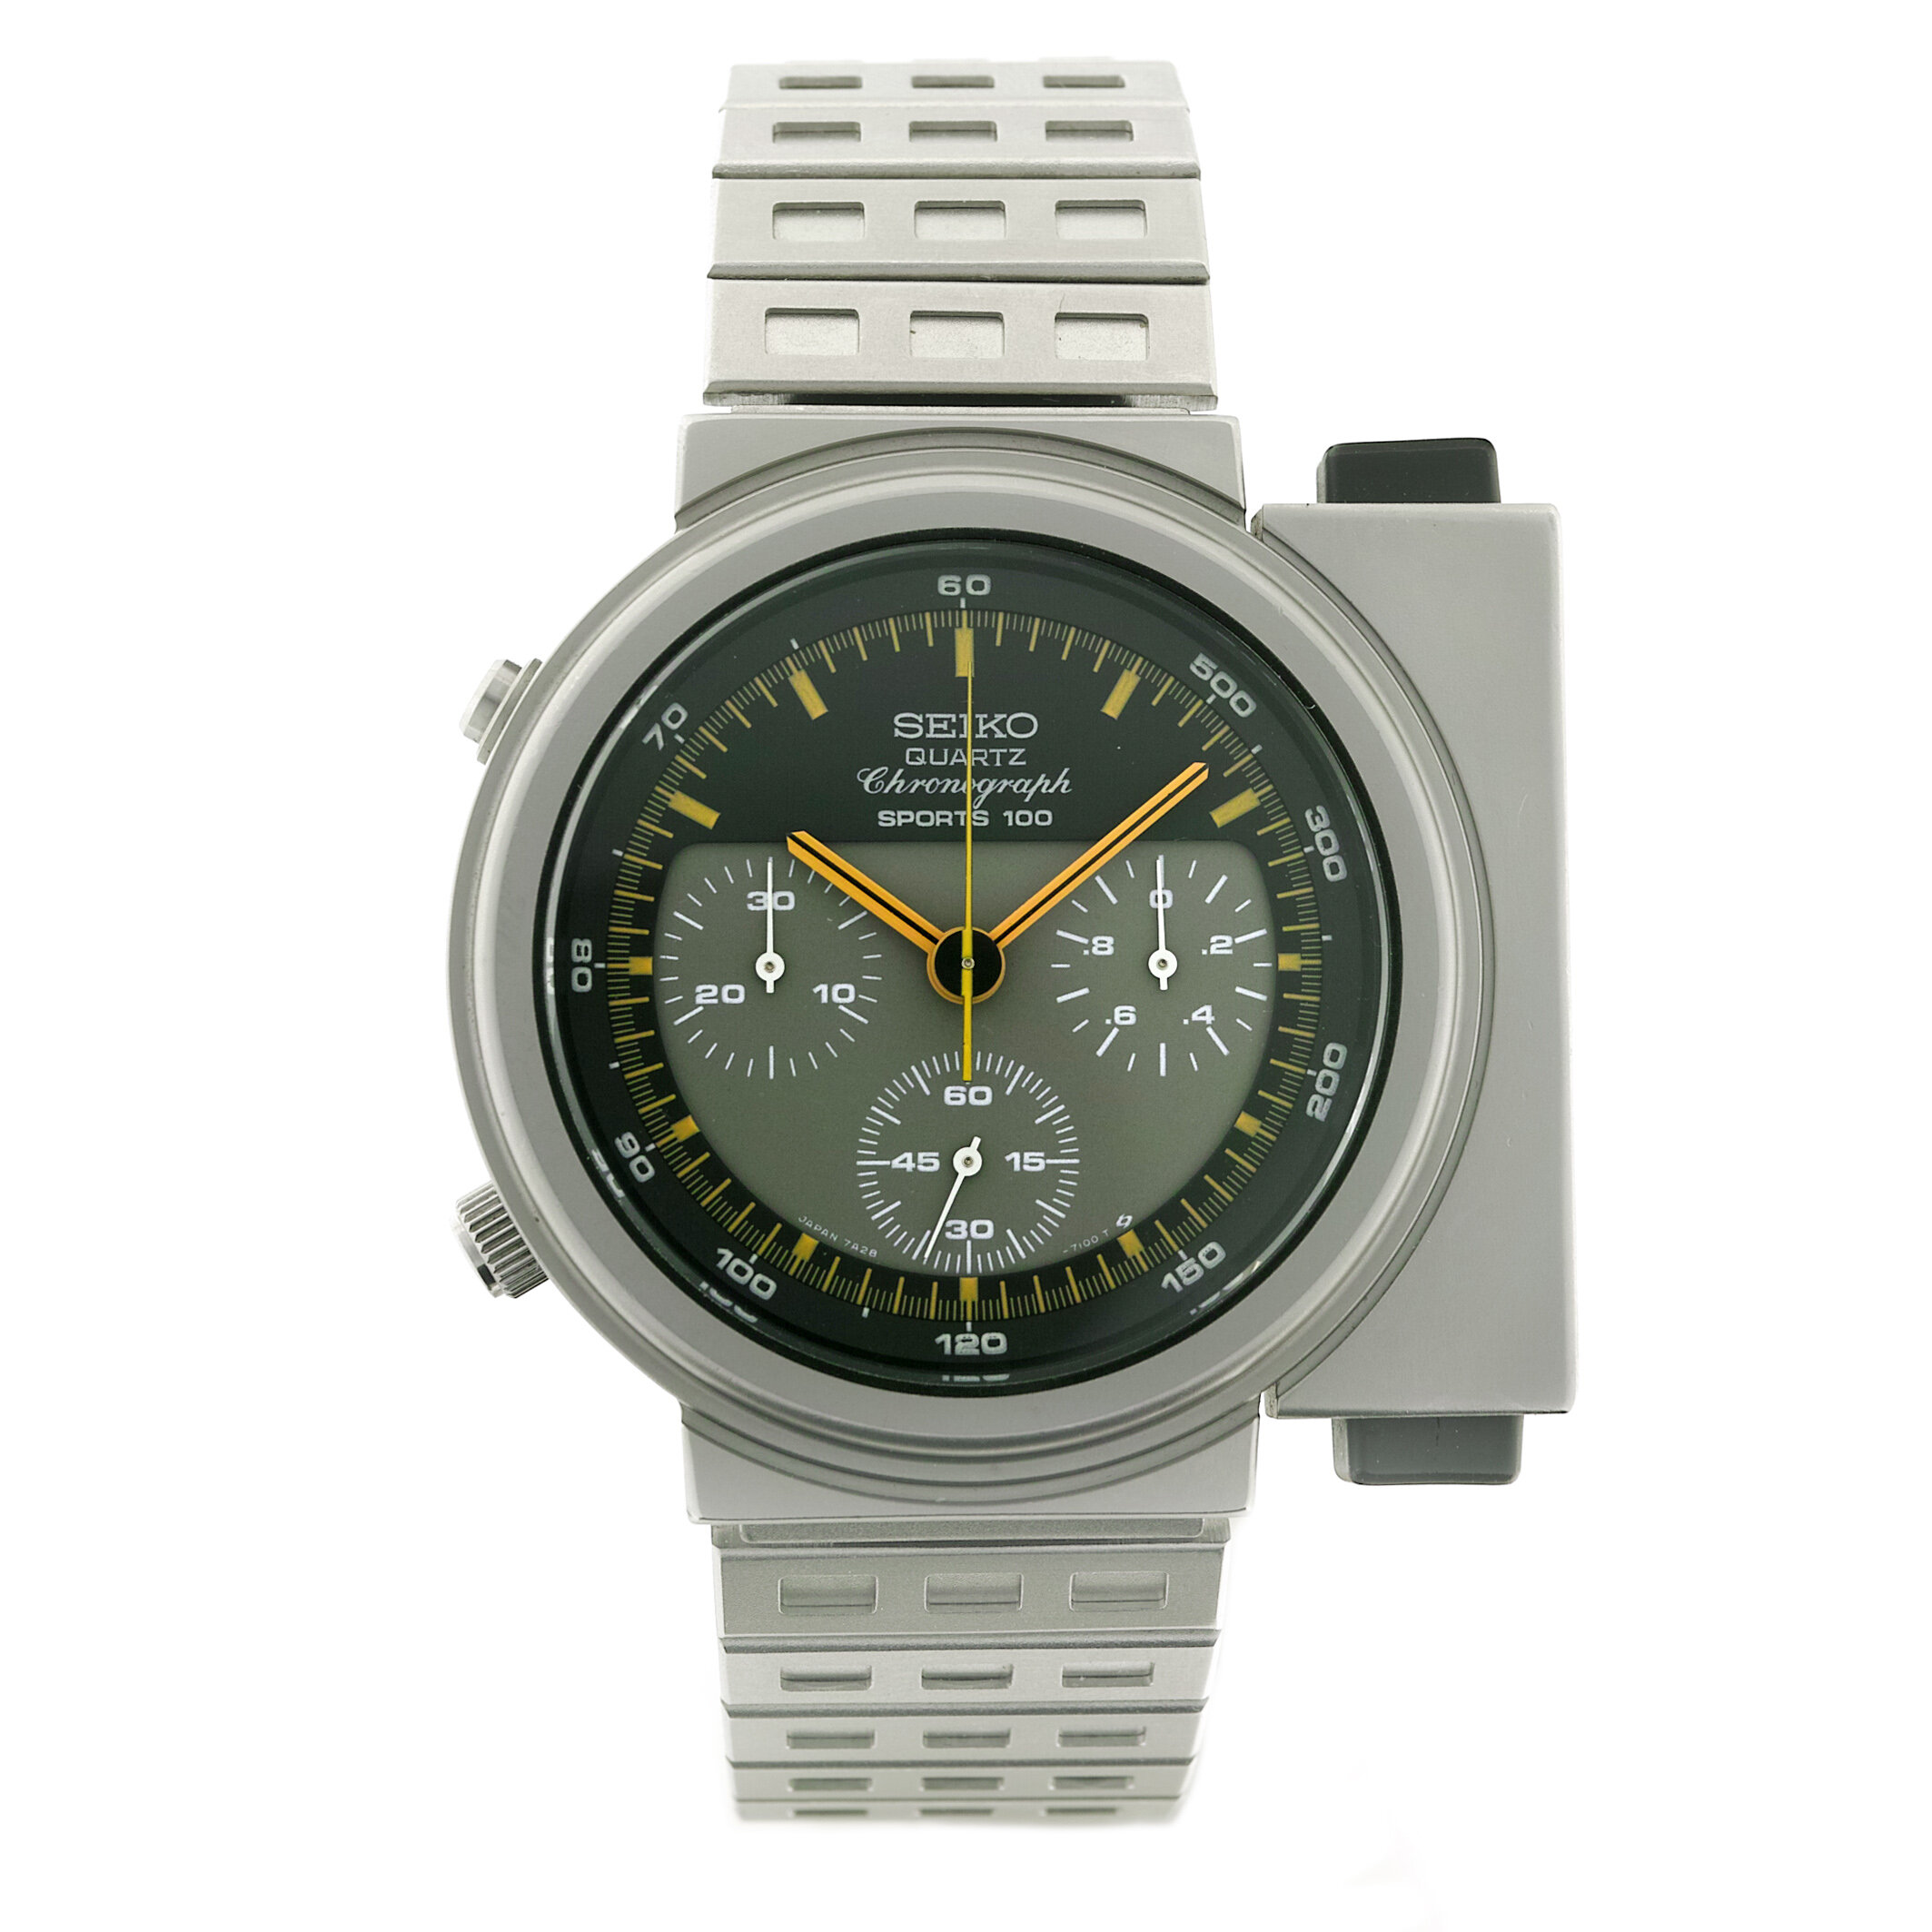 7A28-7000 - Publiques - The vintage watch magazine